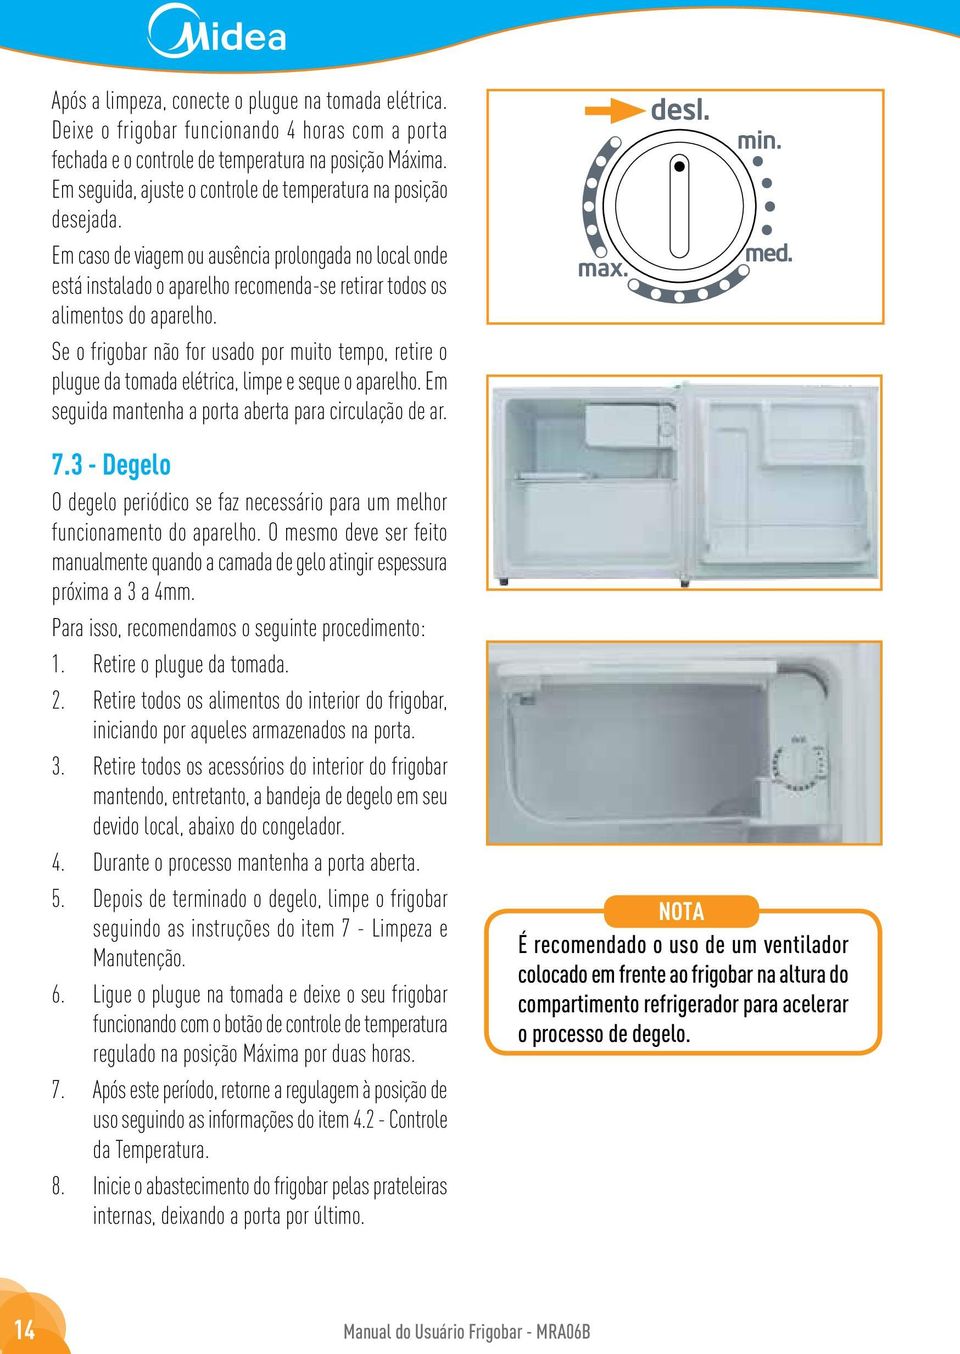 Se o frigobar não for usado por muito tempo, retire o plugue da tomada elétrica, limpe e seque o aparelho. Em seguida mantenha a porta aberta para circulação de ar. 7.